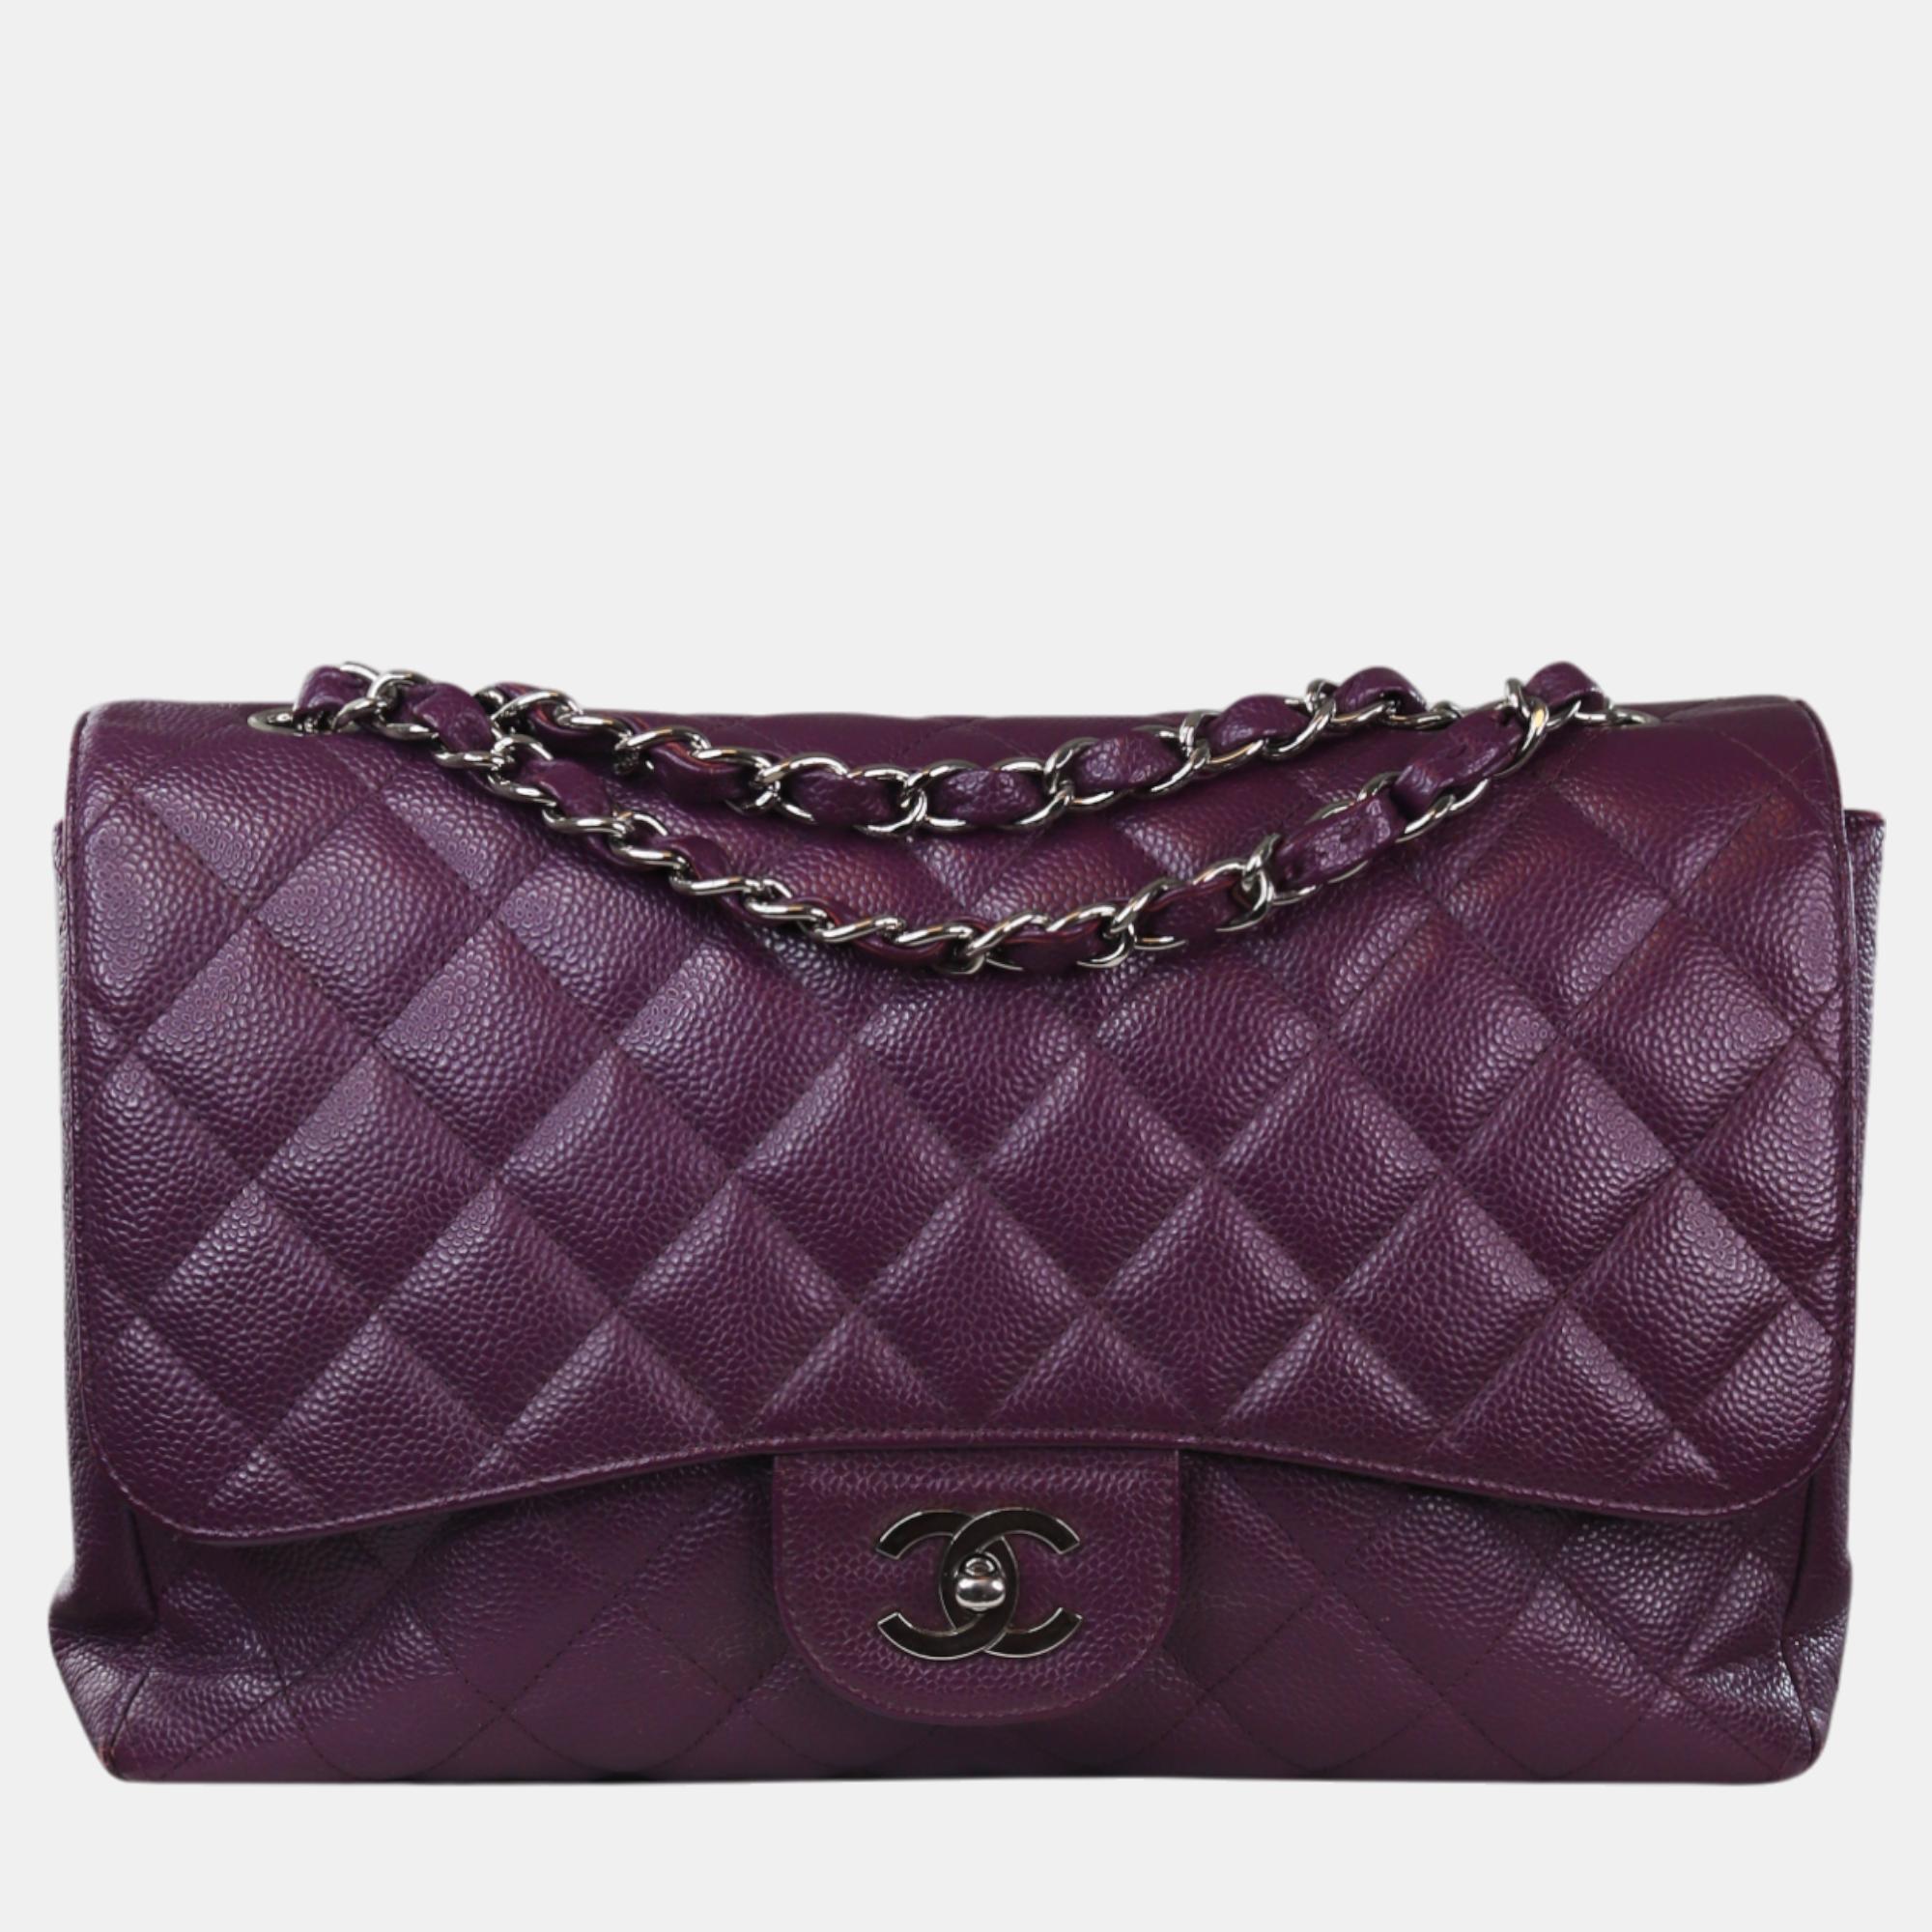 Chanel purple leather classic double flap jumbo bag